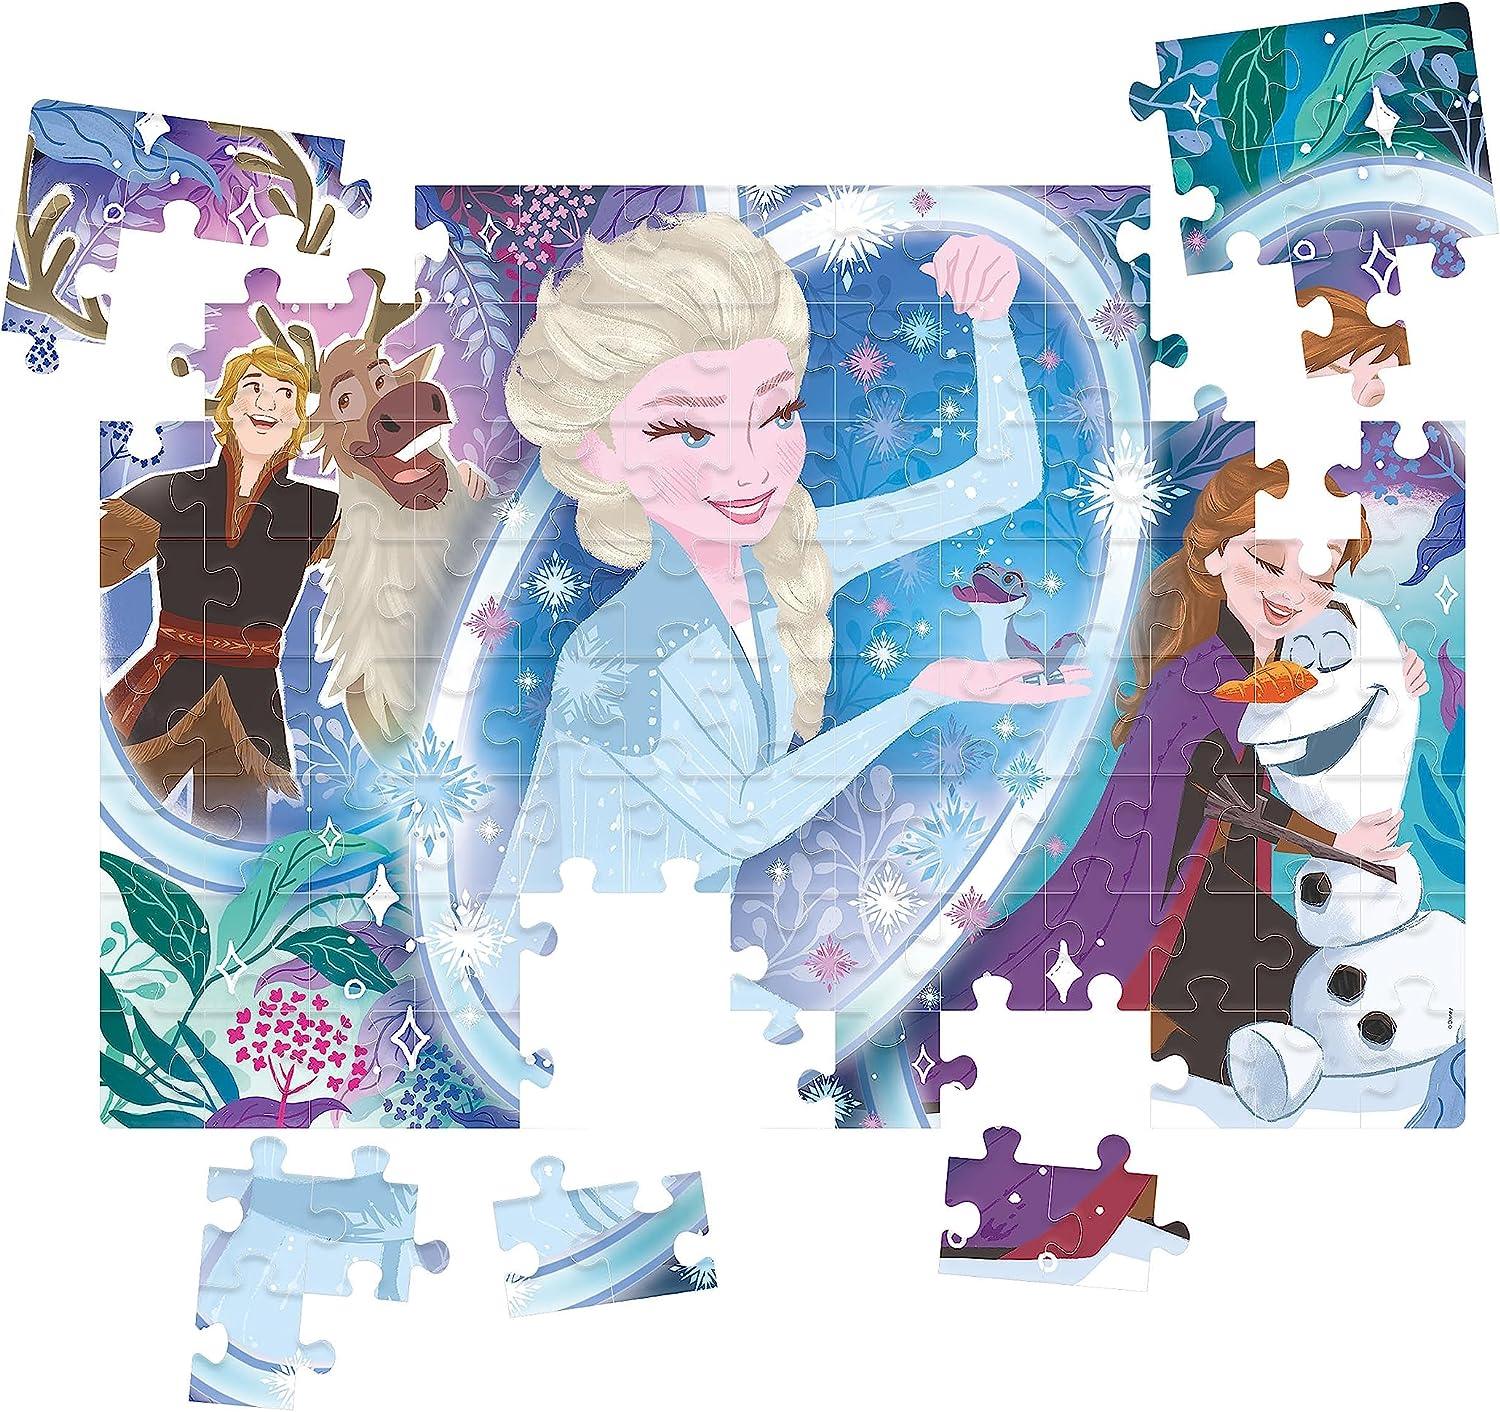 Jogo de Quebra Cabeça infantil jogos online Frozen Ana e Elsa portugues  colors for kids friendly 